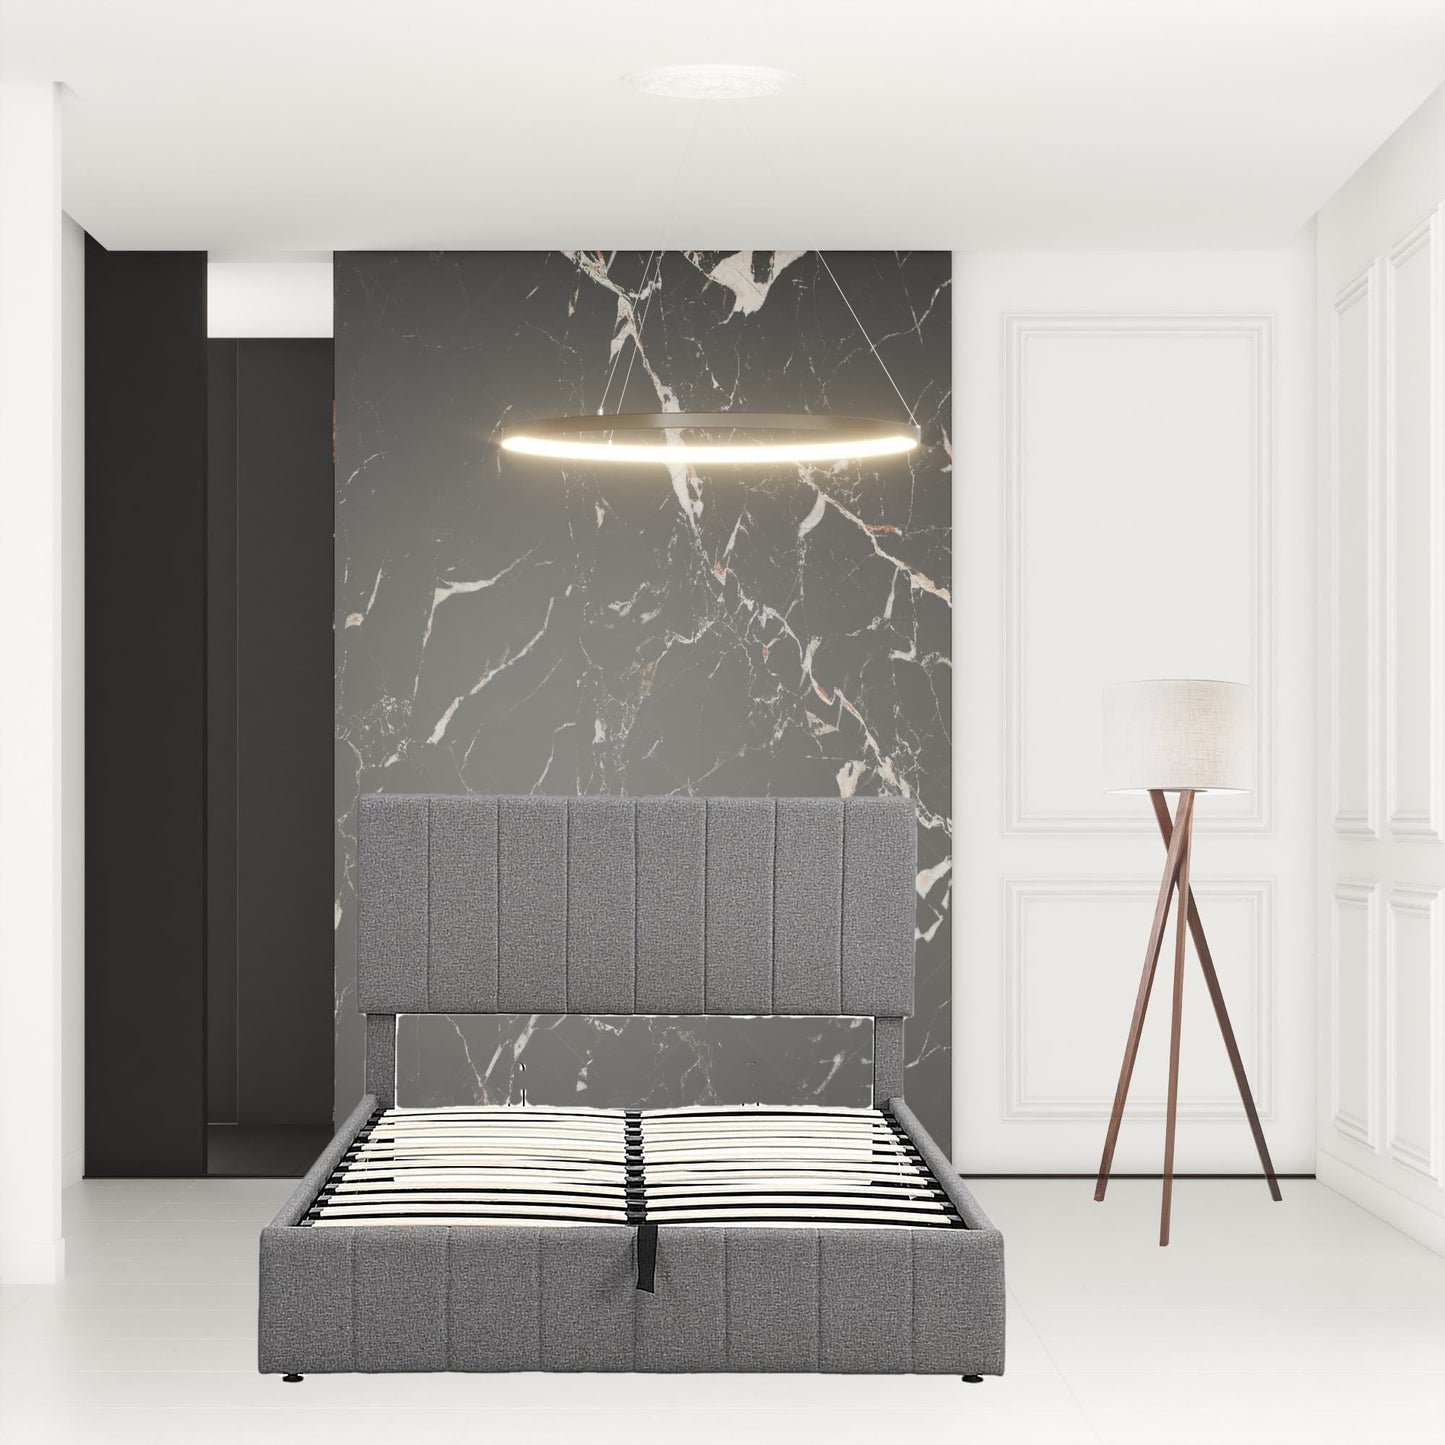 Full Double Gray Upholstered Linen Blend Bed